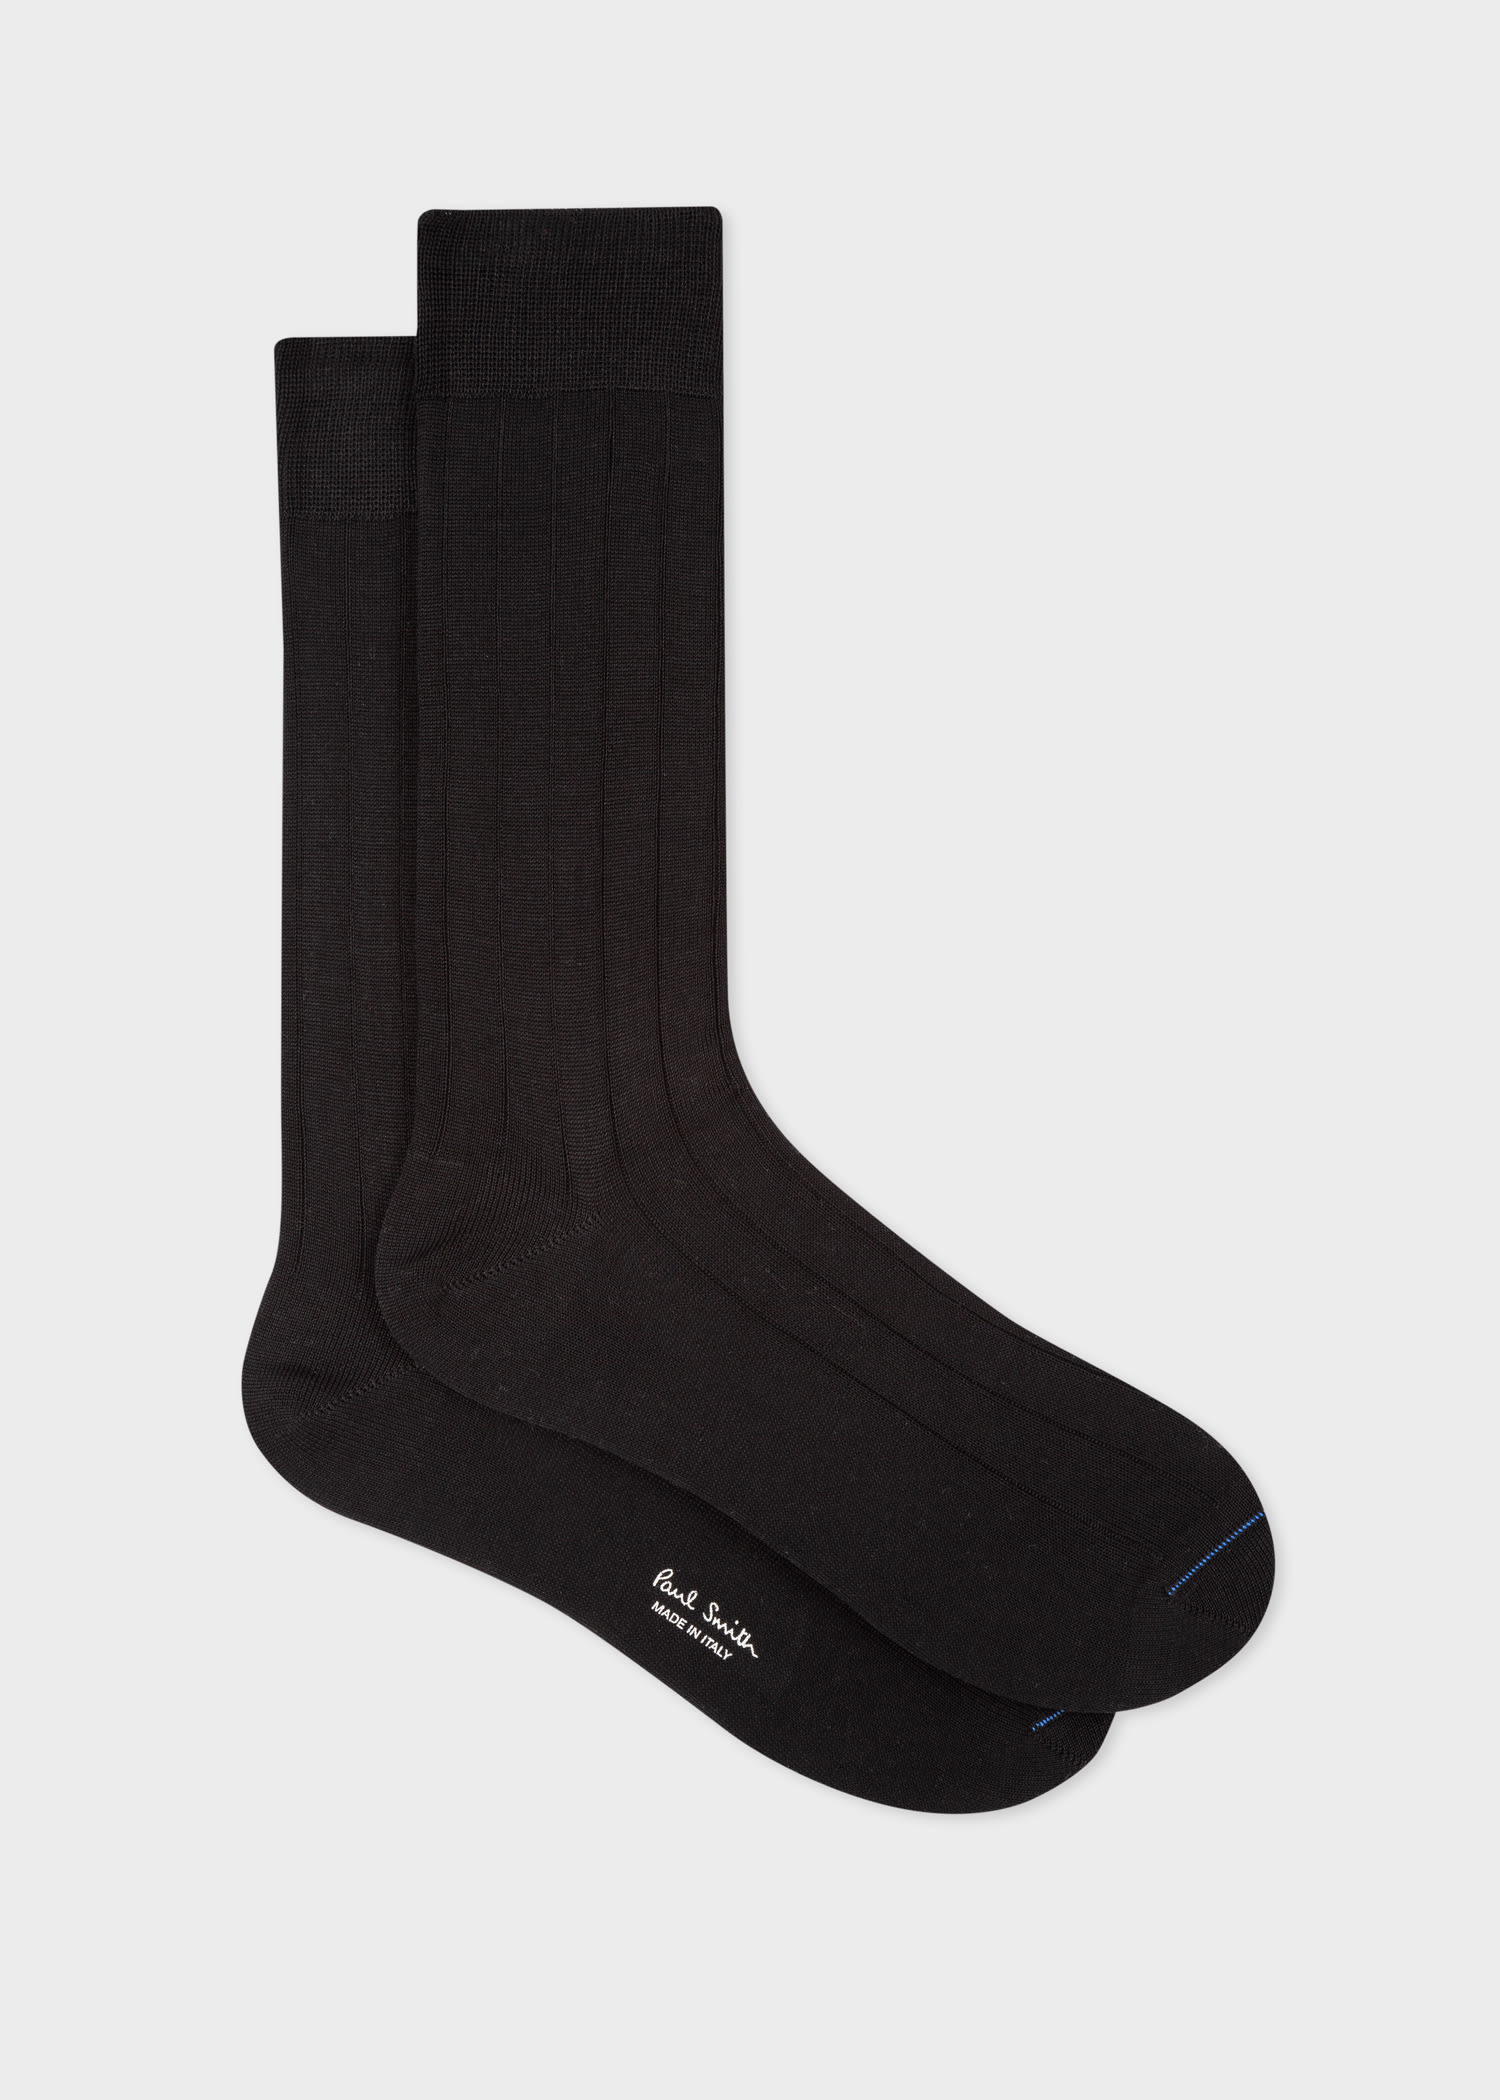 Designer Socks For Men - Paul Smith Australia